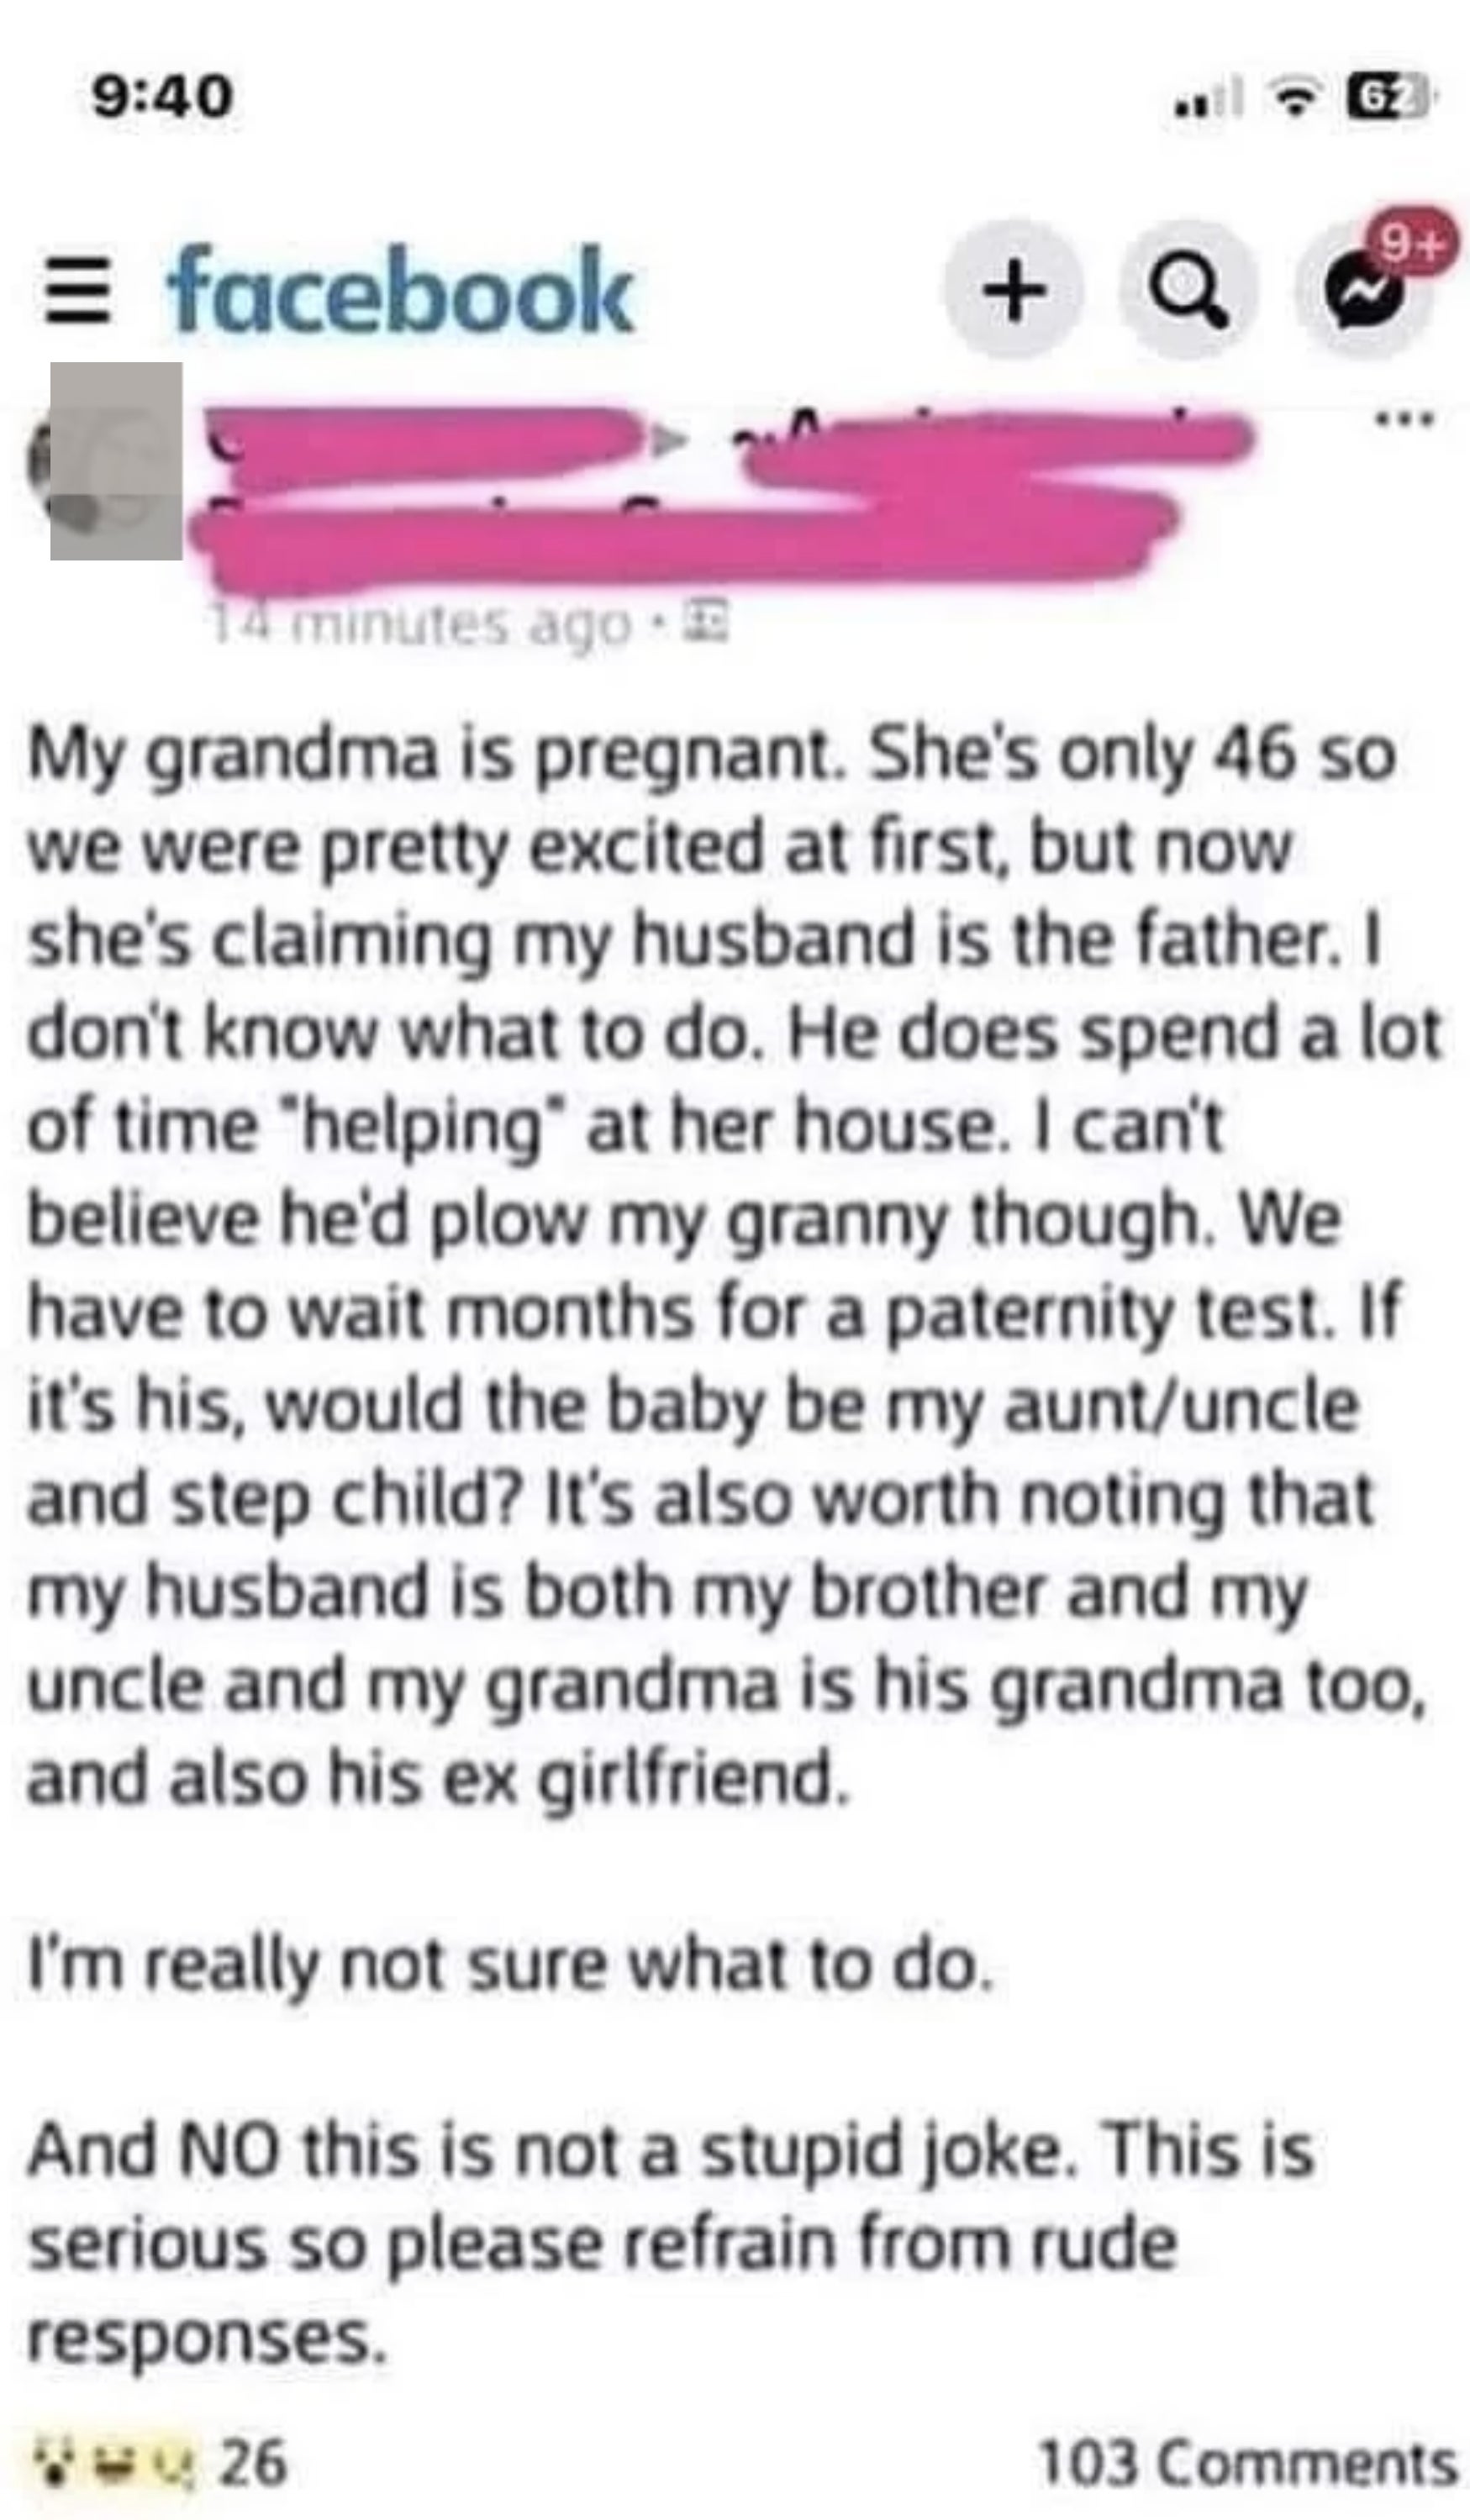 &quot;My grandma is pregnant.&quot;